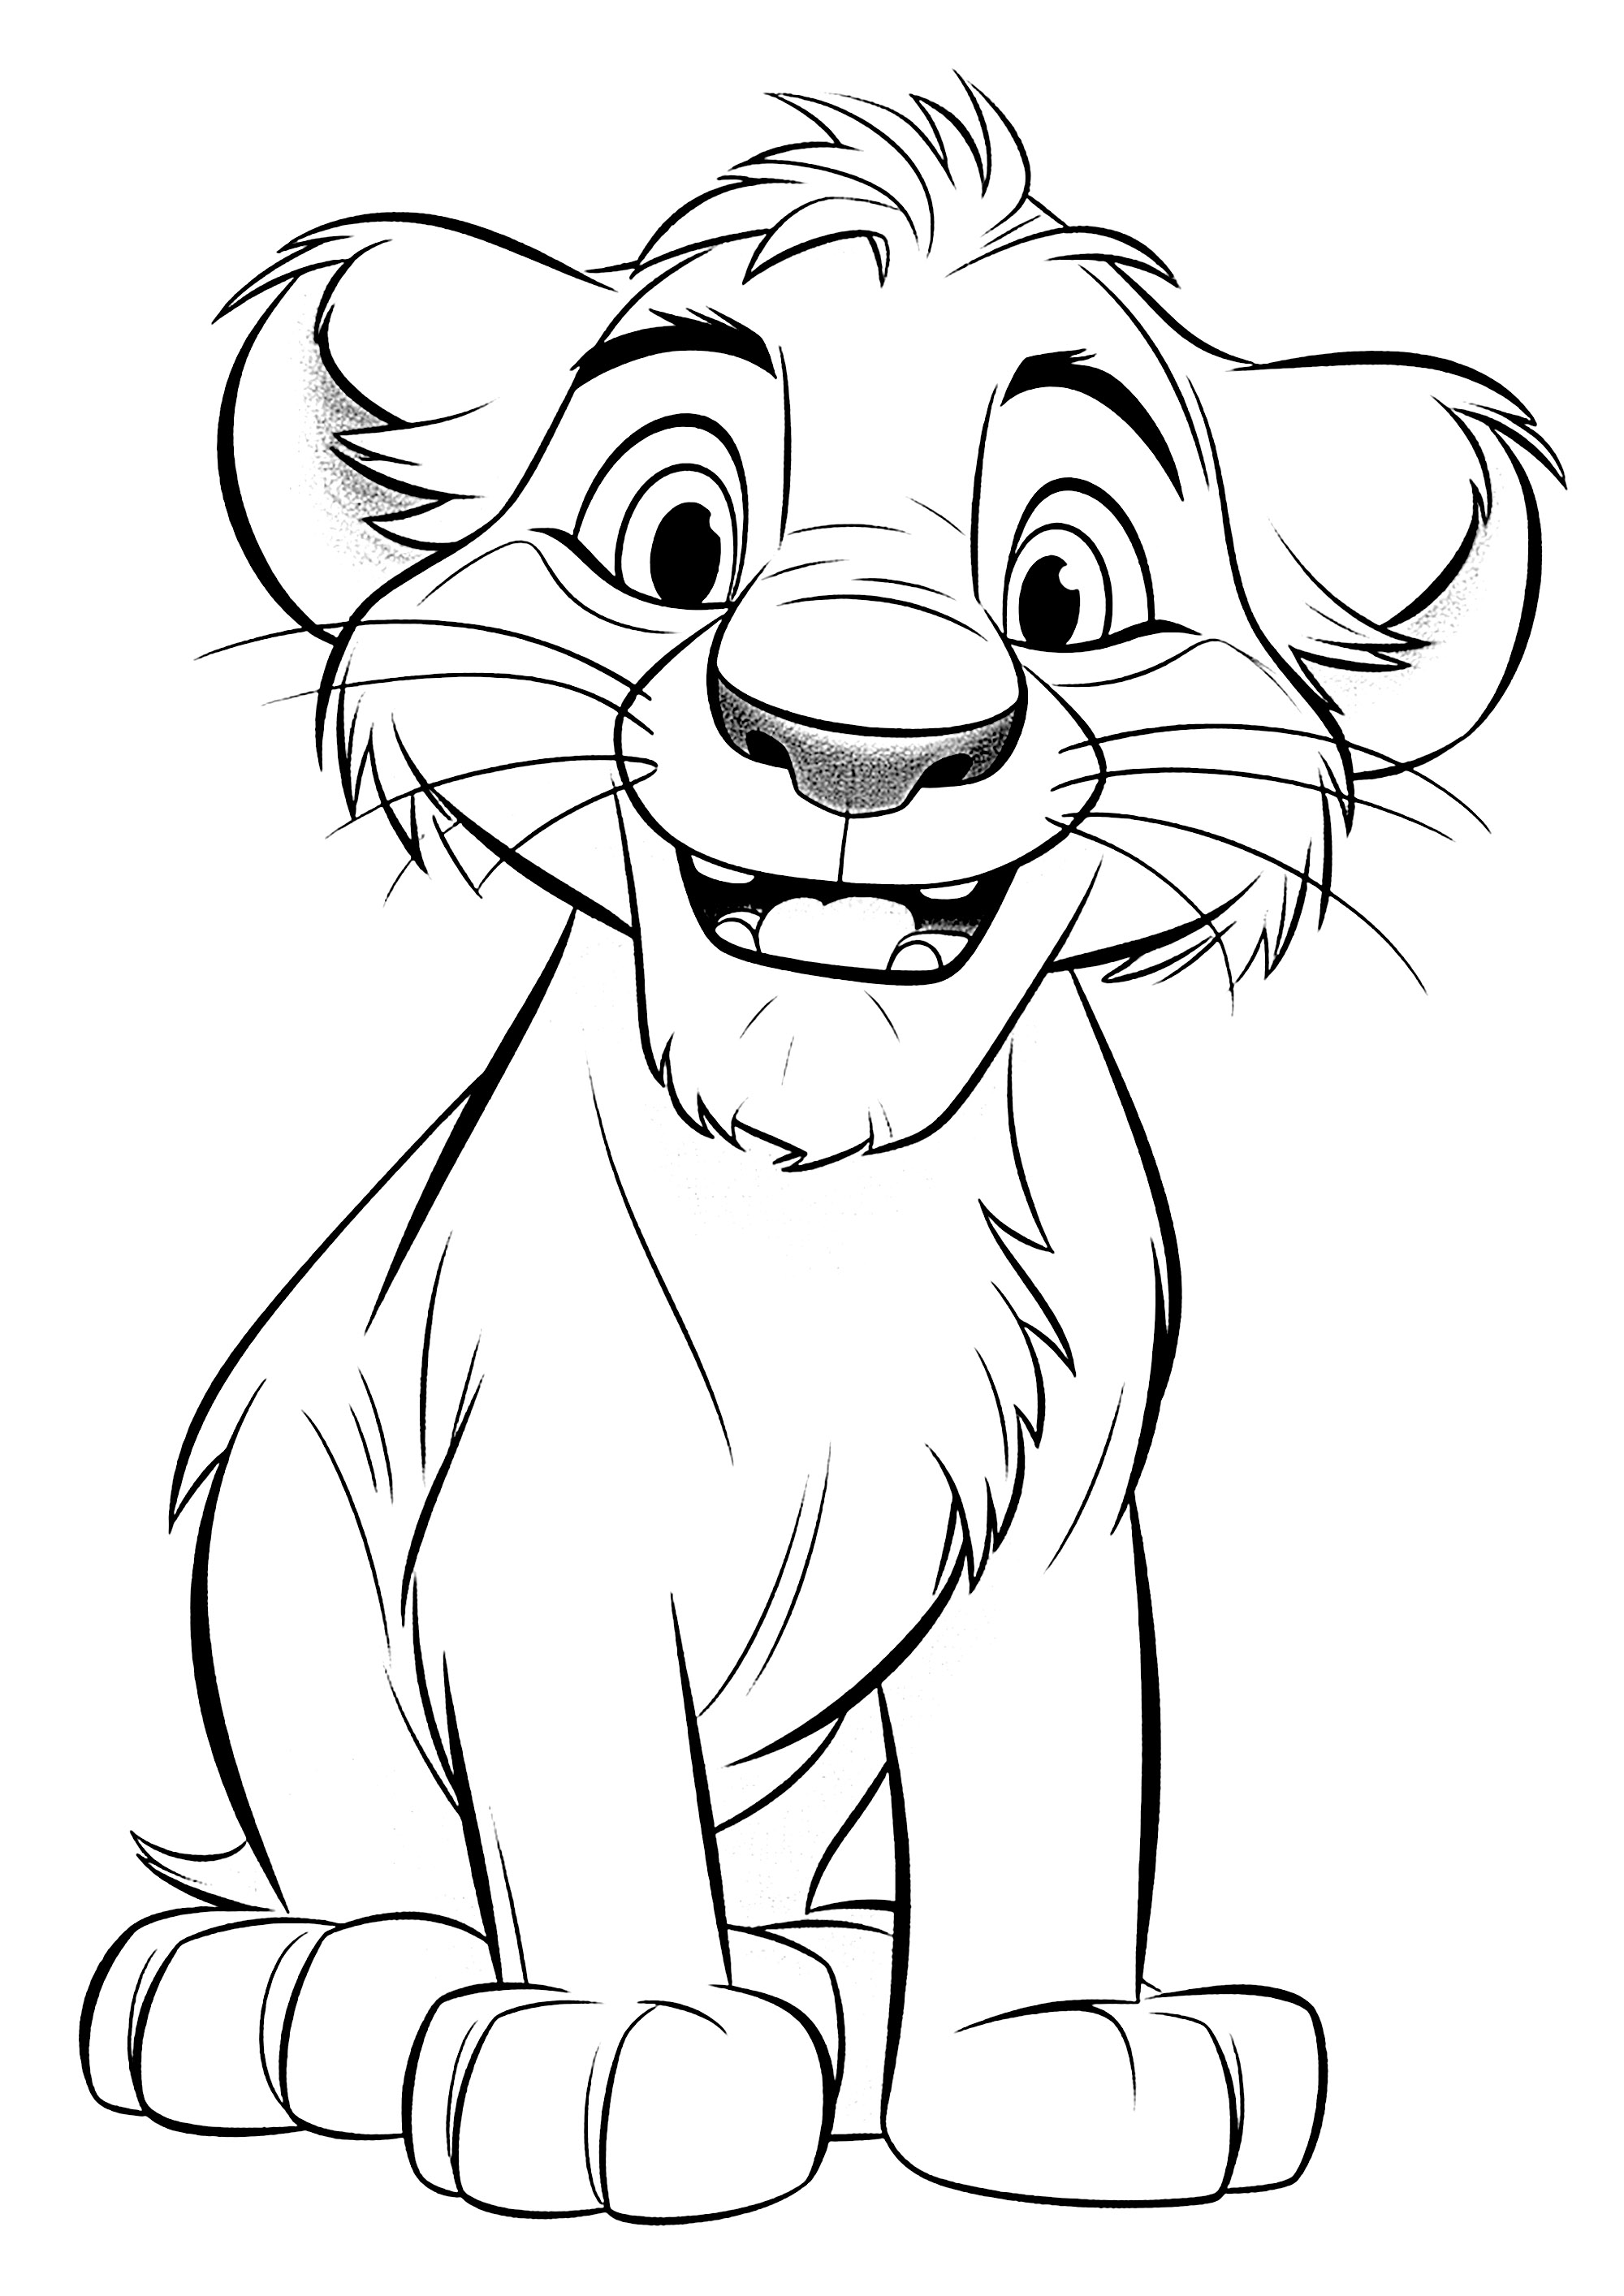 Young lion. A unique Disney style